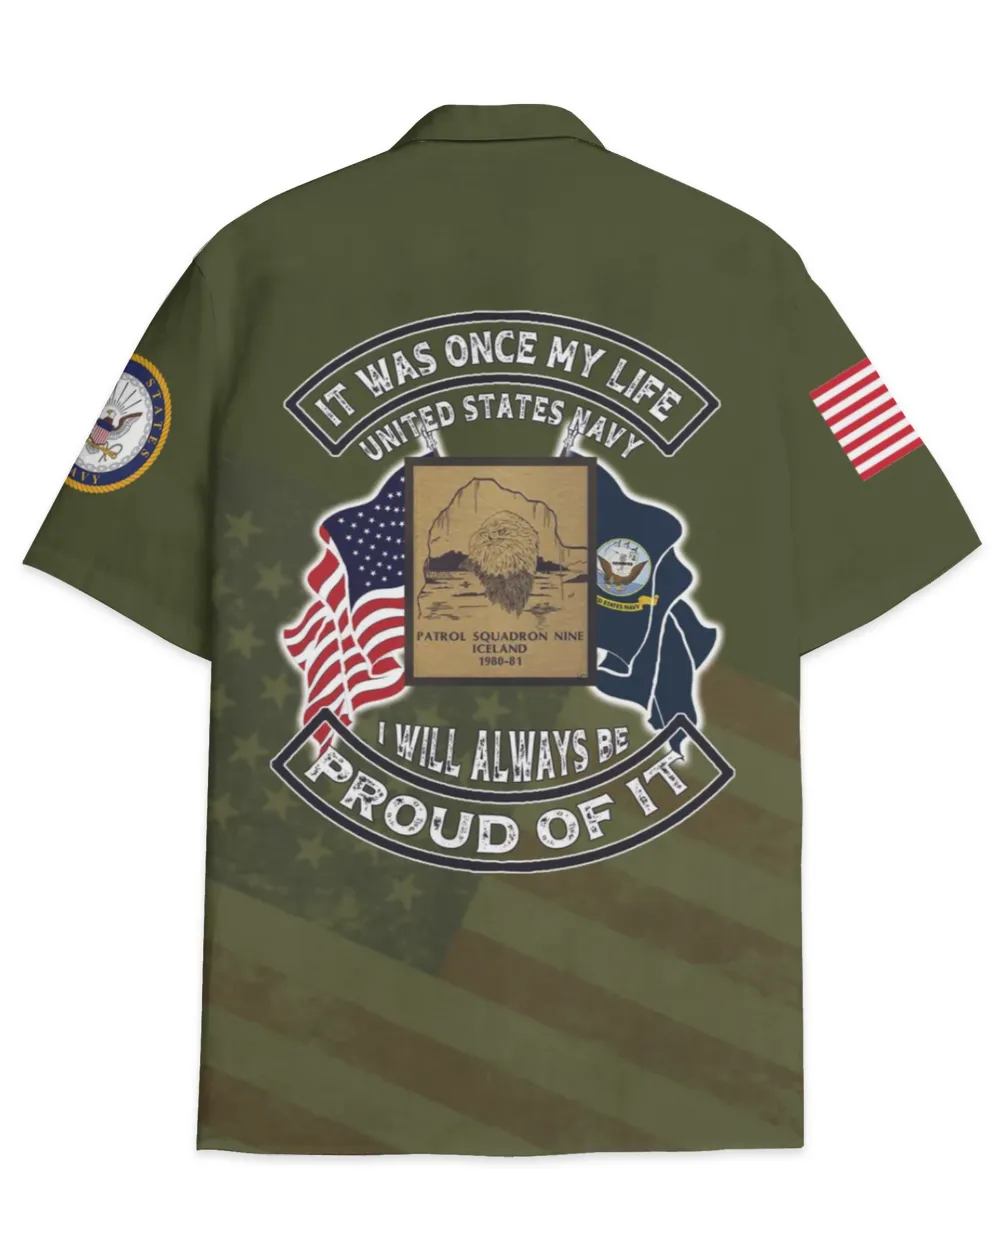 VP-9 Golden Eagles Patrol Nine 1 Hawaiian Shirt